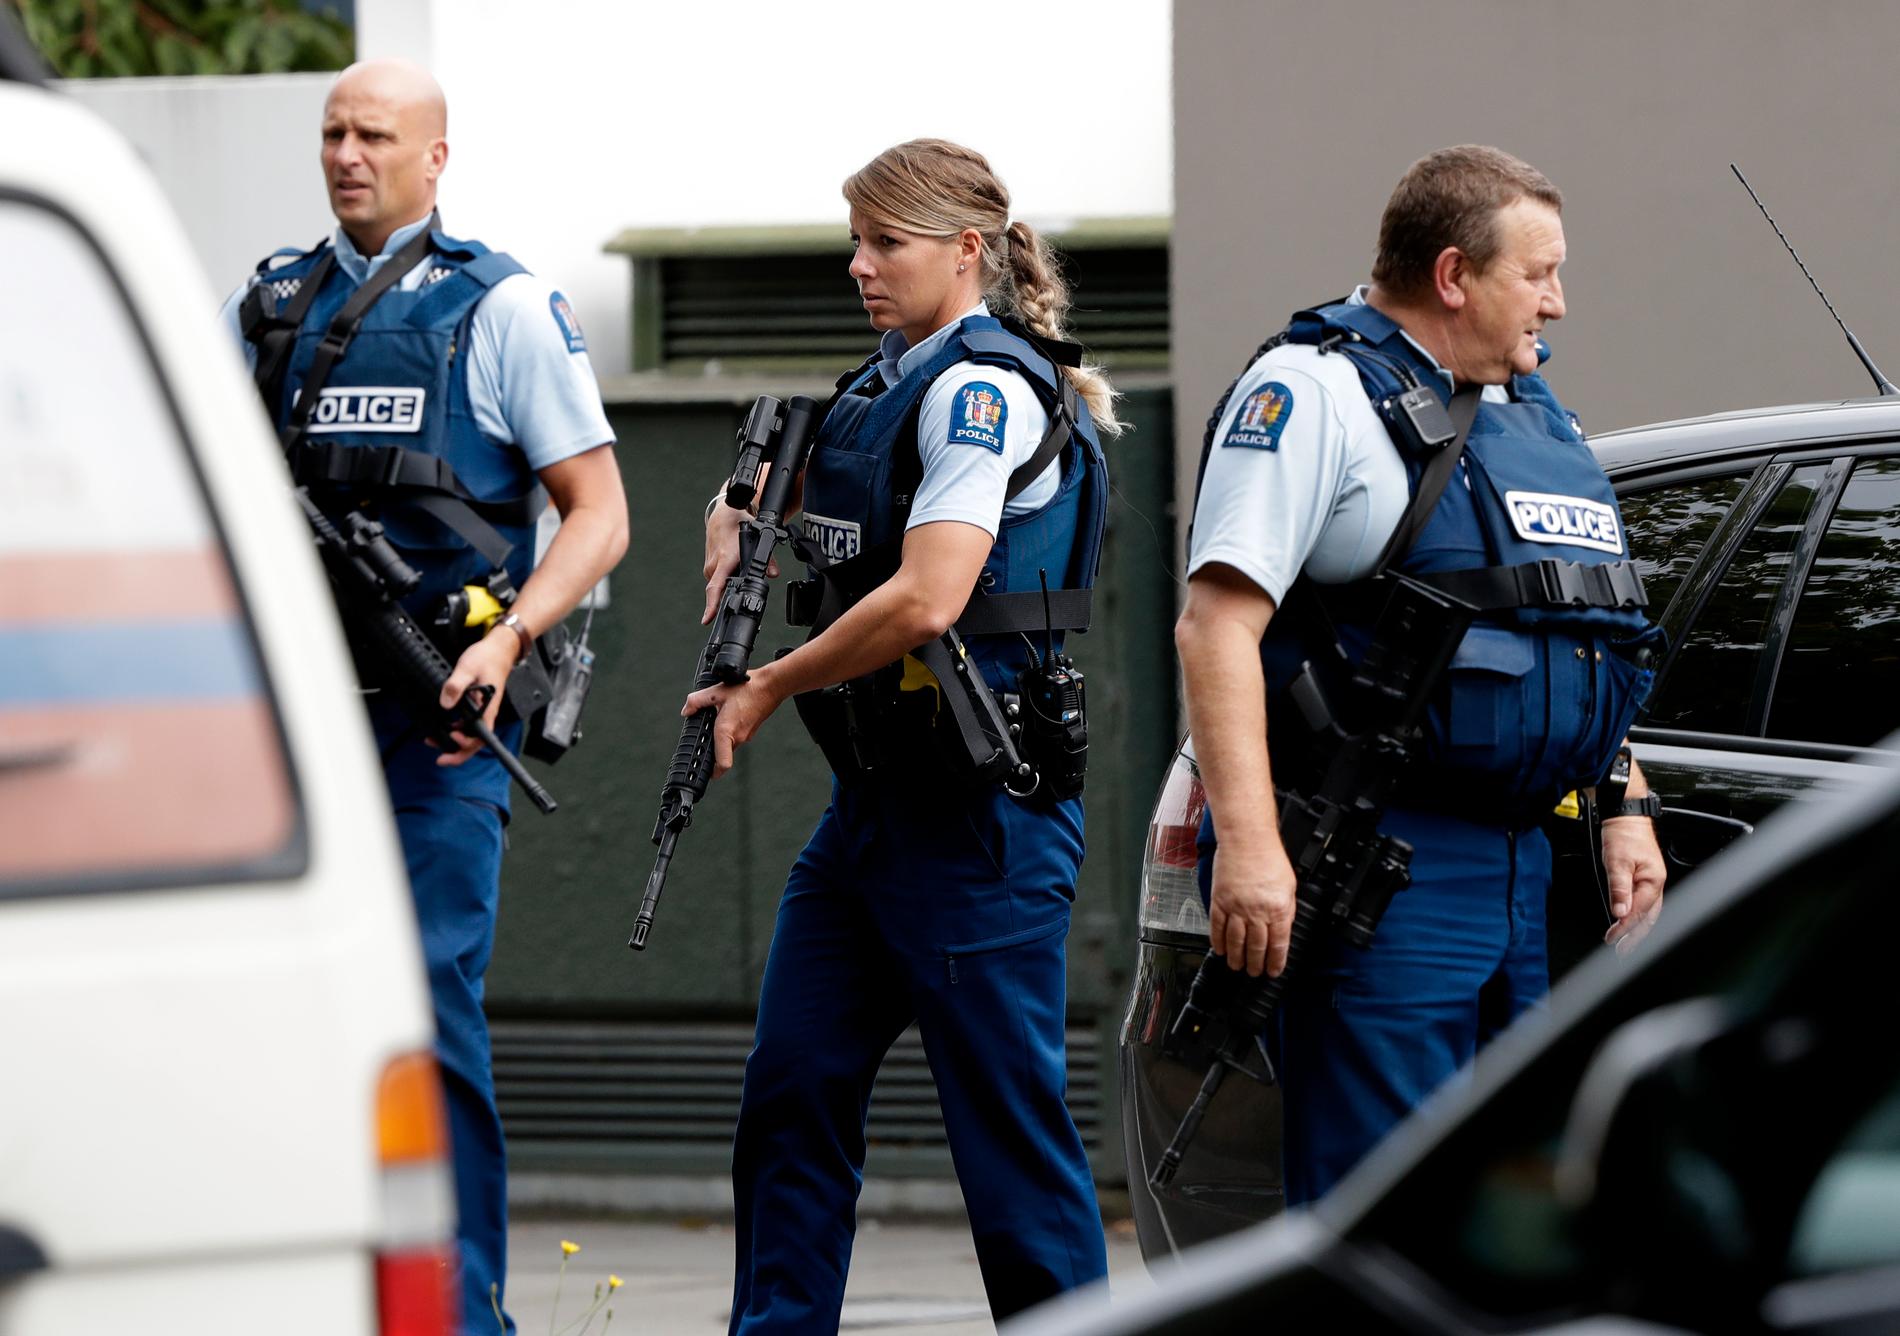 En stor polisinsats pågår i nya zeeländska Christchurch efter skottlossning vid en moské i staden.